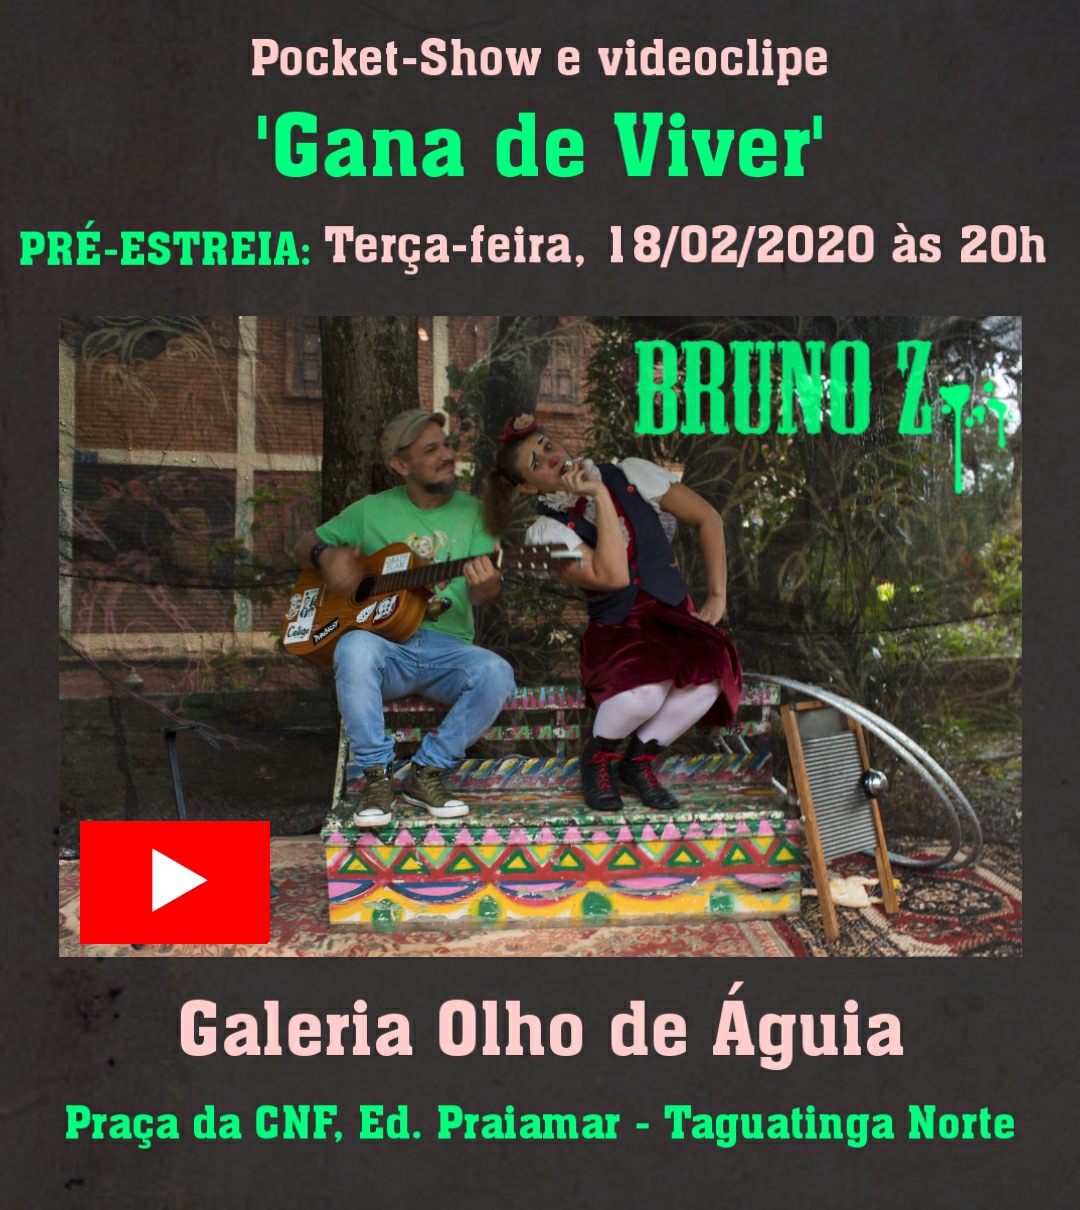 Bruno Z lana o videoclipe Gana de Viver com participao da palhaa Berinjela dia 18 na Galeria Olho de guia.Taguatinga Norte.